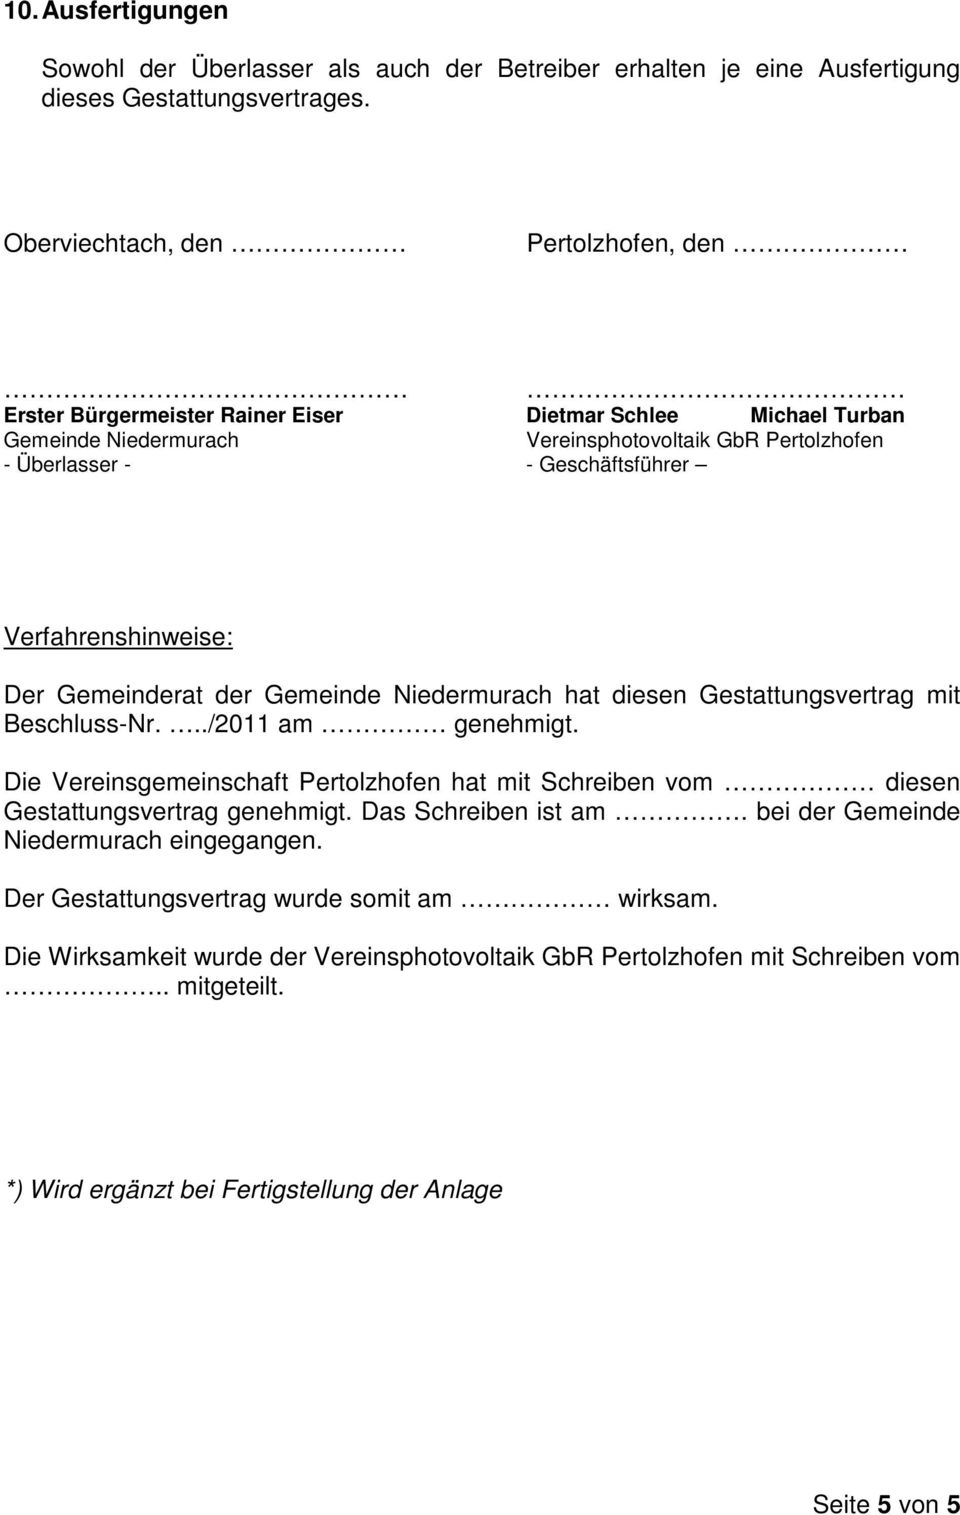 Verfahrenshinweise: Der Gemeinderat der Gemeinde Niedermurach hat diesen Gestattungsvertrag mit Beschluss-Nr.../2011 am genehmigt.